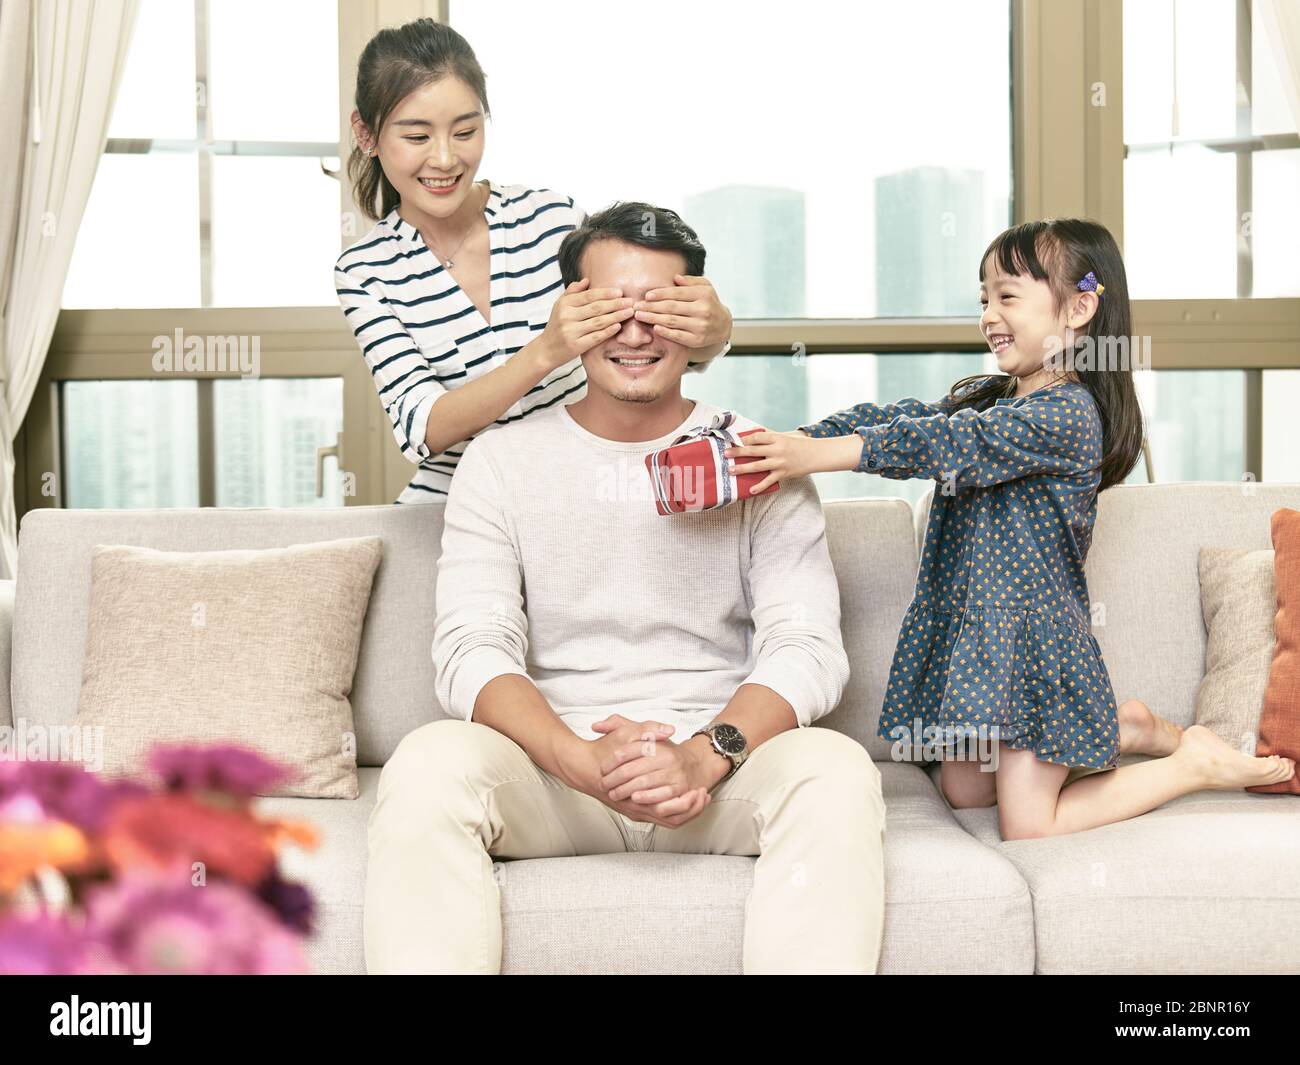 petite fille asiatique donnant un cadeau d'anniversaire à son père Banque D'Images